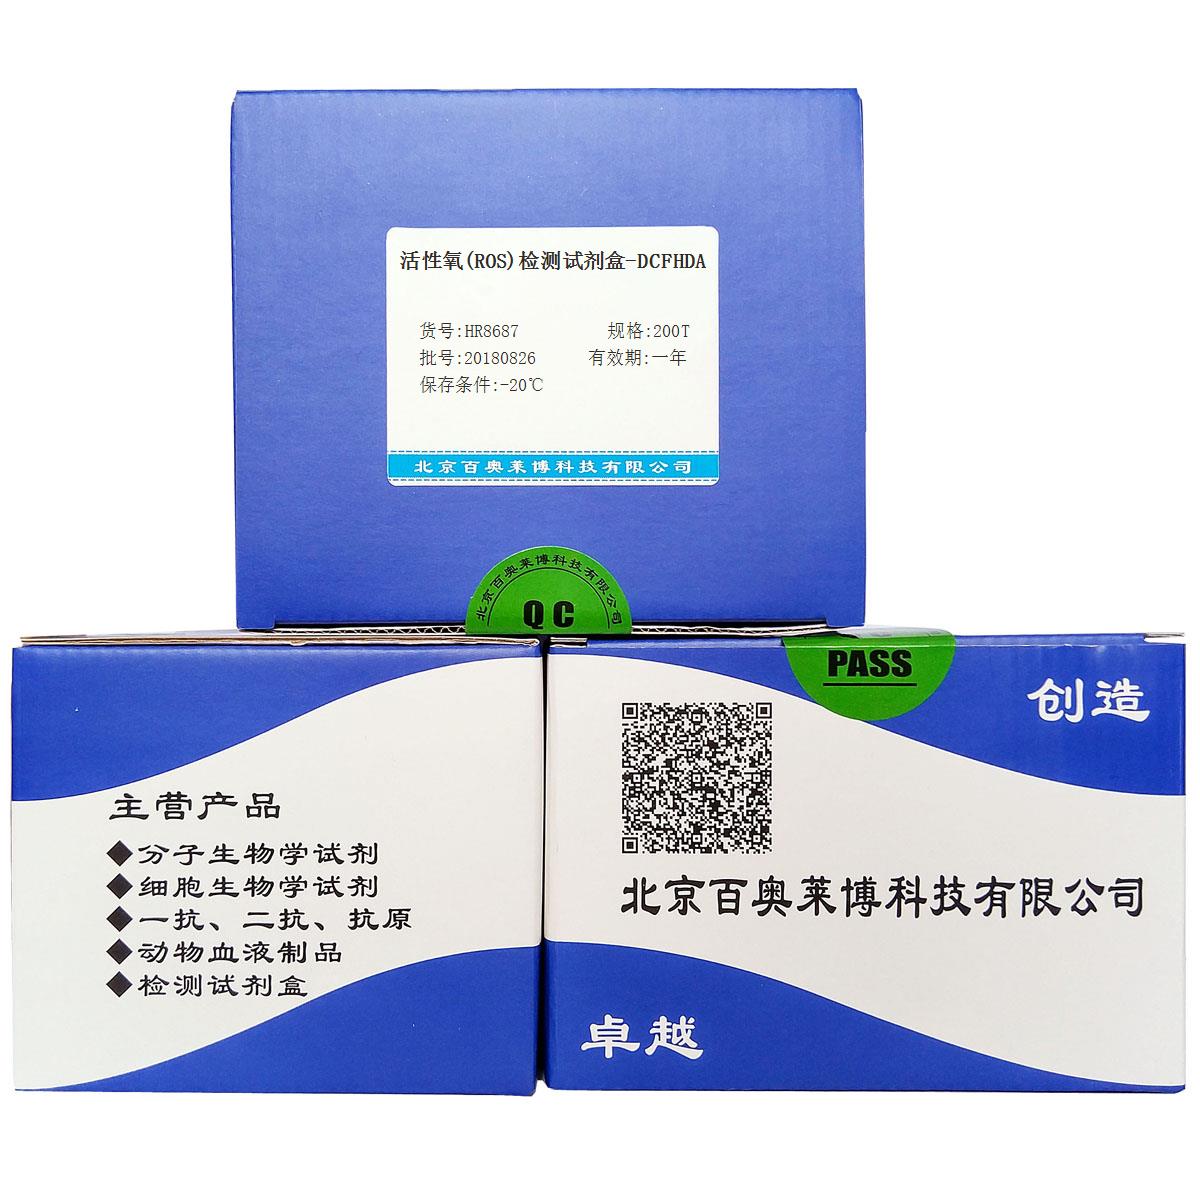 活性氧(ROS)检测试剂盒-DCFHDA